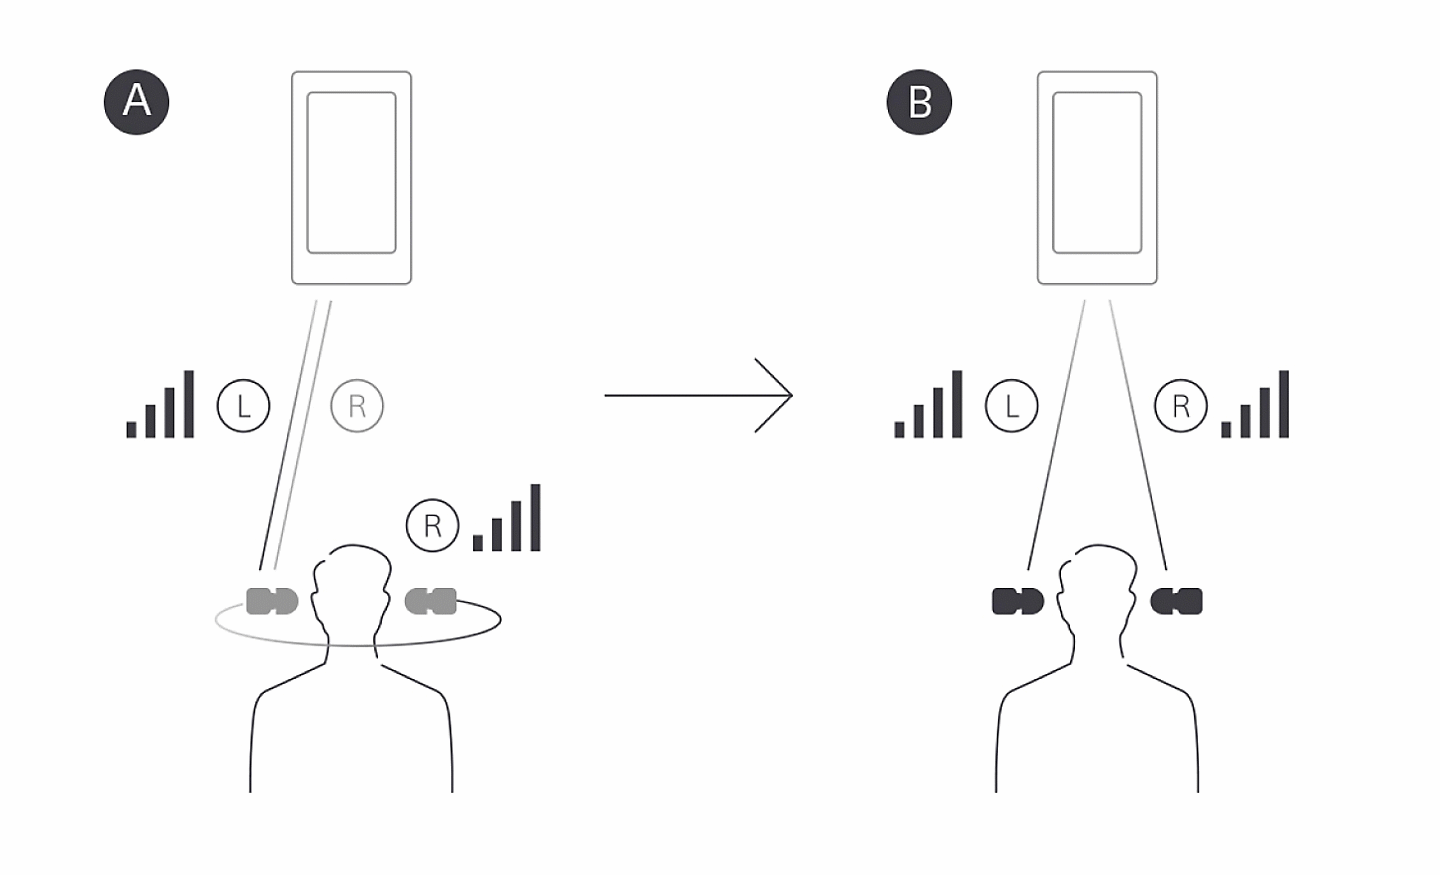 Ilustração que compara a Transmissão E para D BT nos auriculares WF-1000X com a Transmissão E/D simultânea BT nos WF-1000XM4